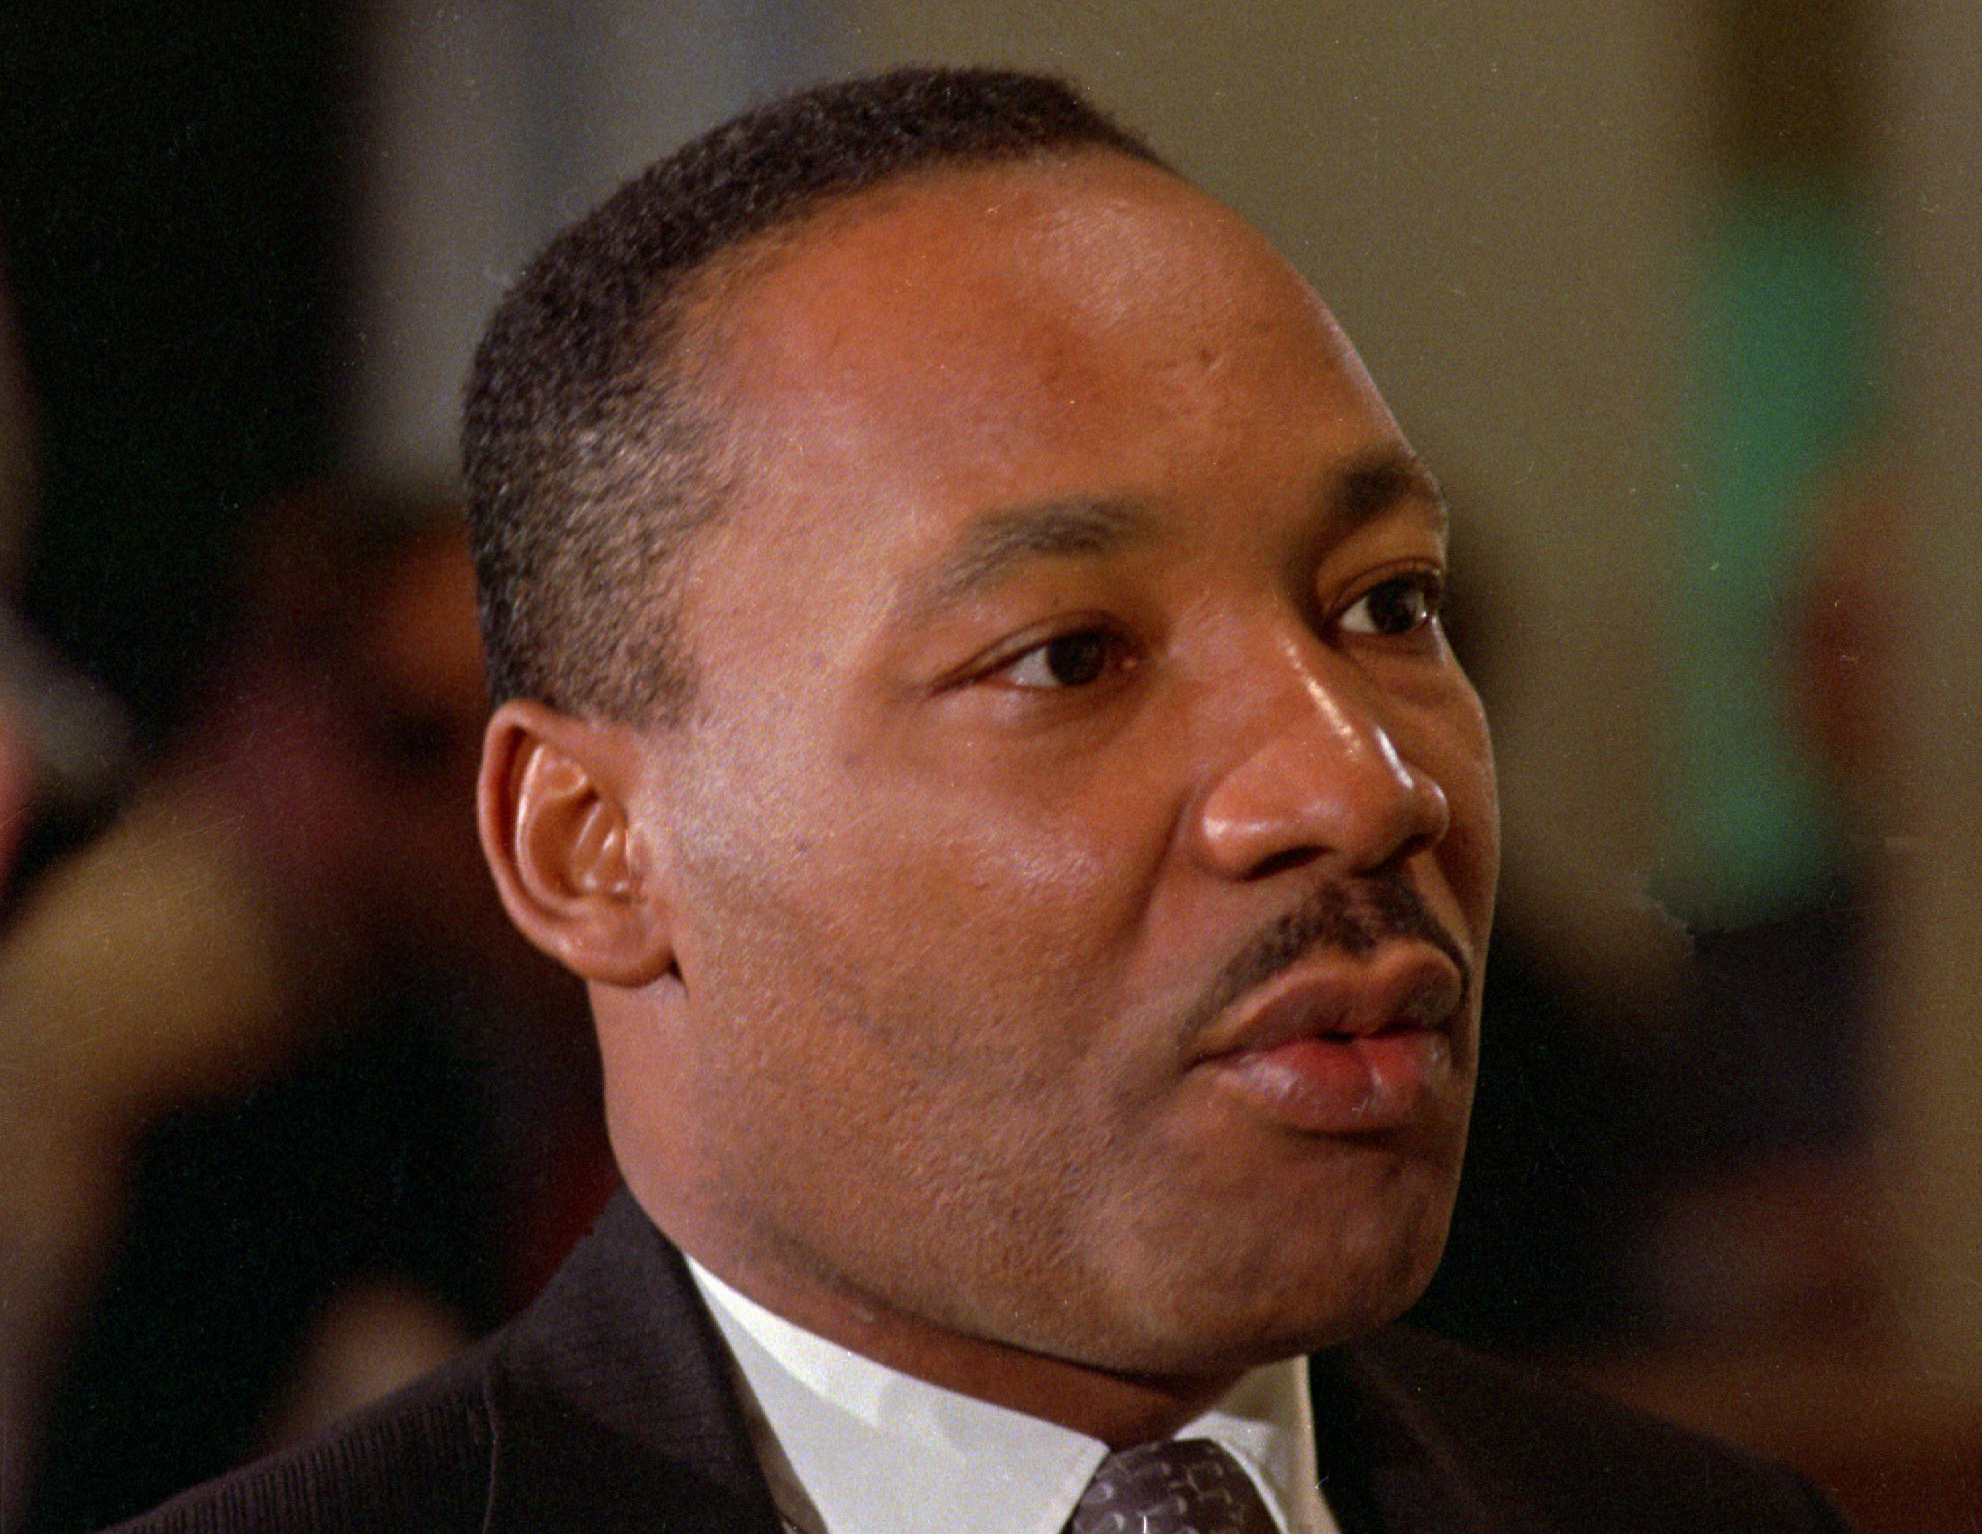 Kings tal "I have a dream" från 1963 berörde en hel värld i kampen för rättvisa. Martin Luther King mördades 1968.